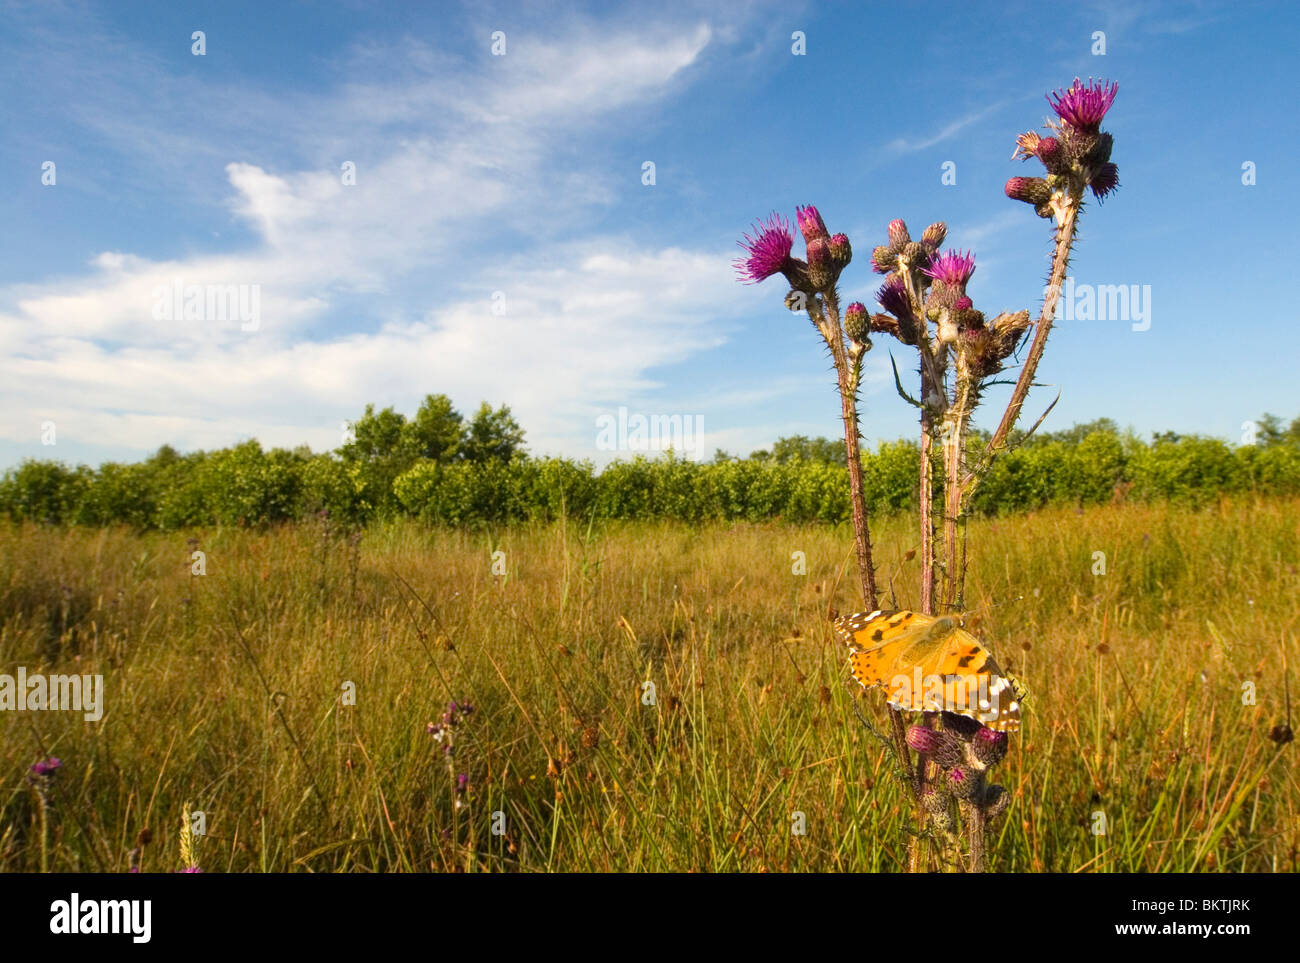 distelvlinder in voorgestelde vlinderreservaat Berkenwoudse Driehoek; painted lady in grassland habitat; Stock Photo